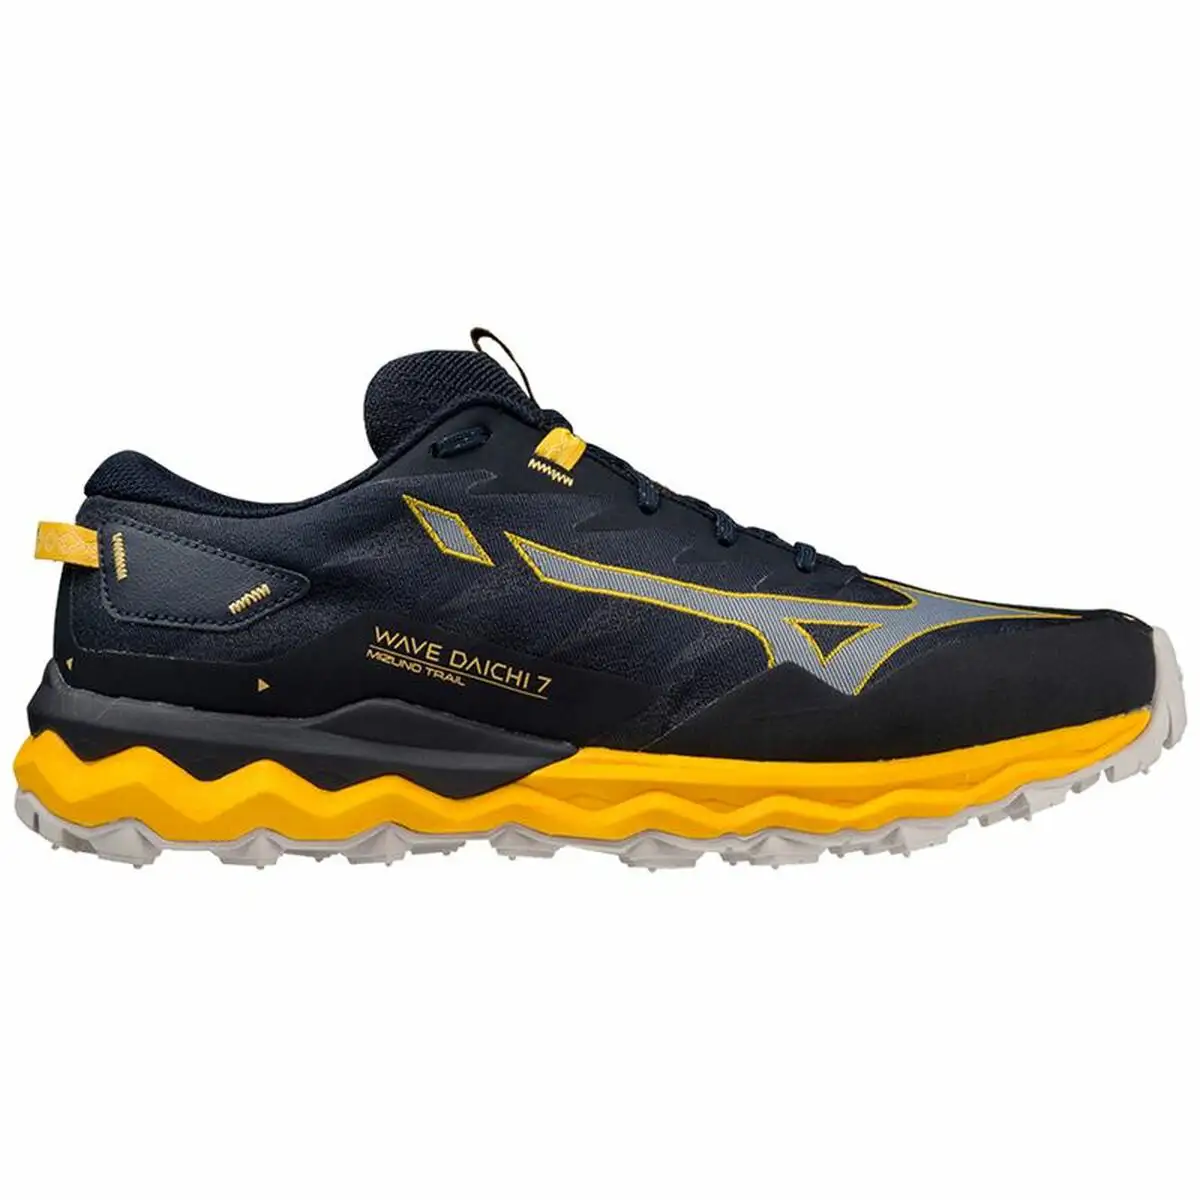 Chaussures de running pour adultes mizuno wave daichi 7 noir homme_2179. DIAYTAR SENEGAL - Où la Mode et le Confort se Rencontrent. Plongez dans notre univers de produits et trouvez des articles qui vous habillent avec style et aisance.